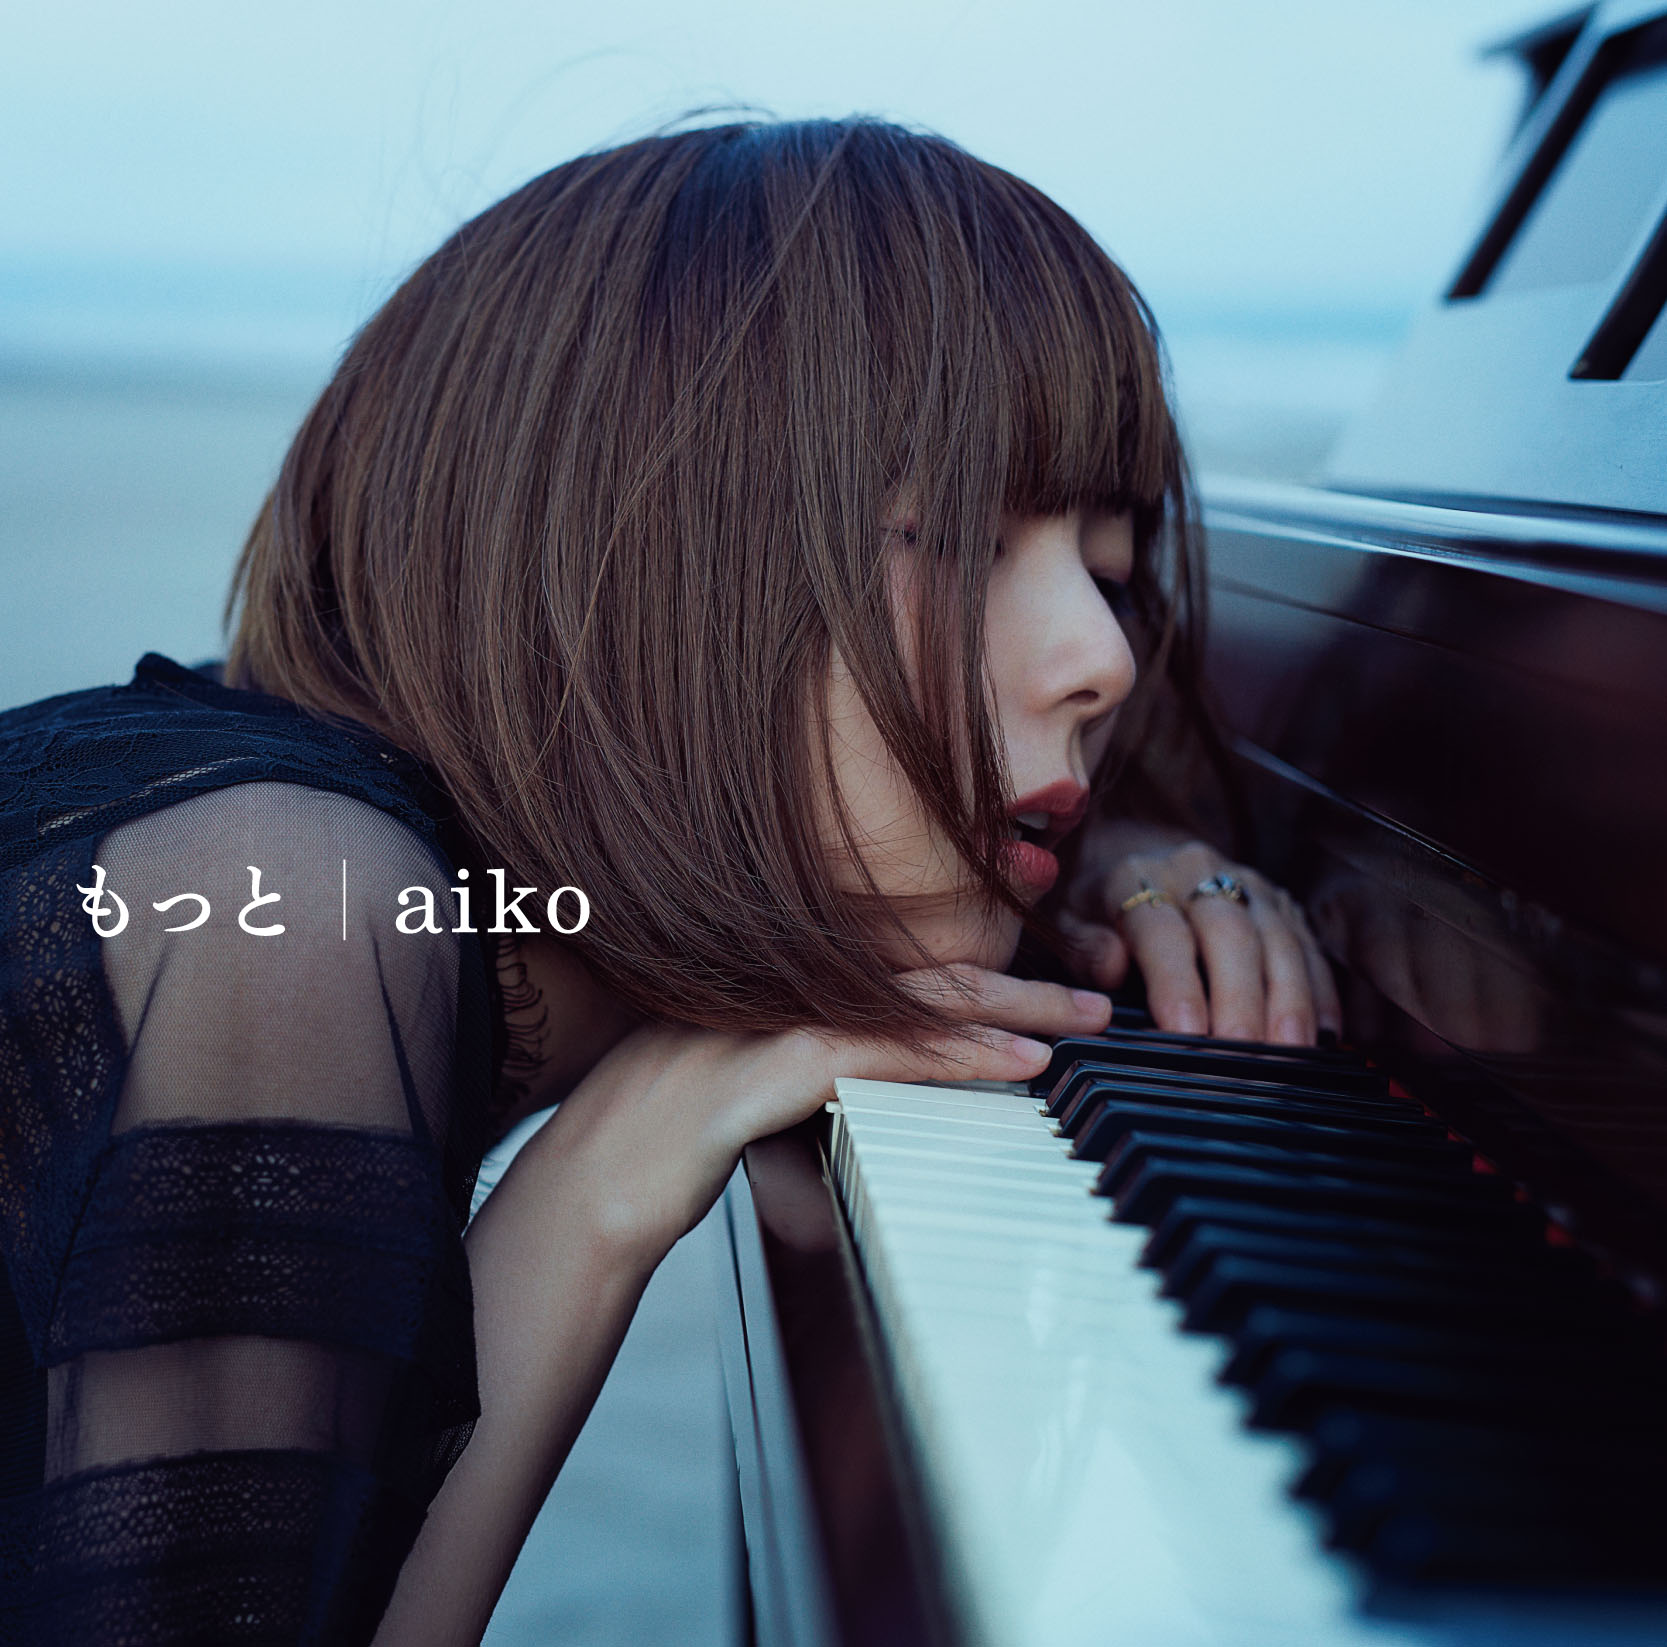 aiko、新曲が綾瀬はるか出演「SEIKO LUKIA」CMソングに決定サムネイル画像